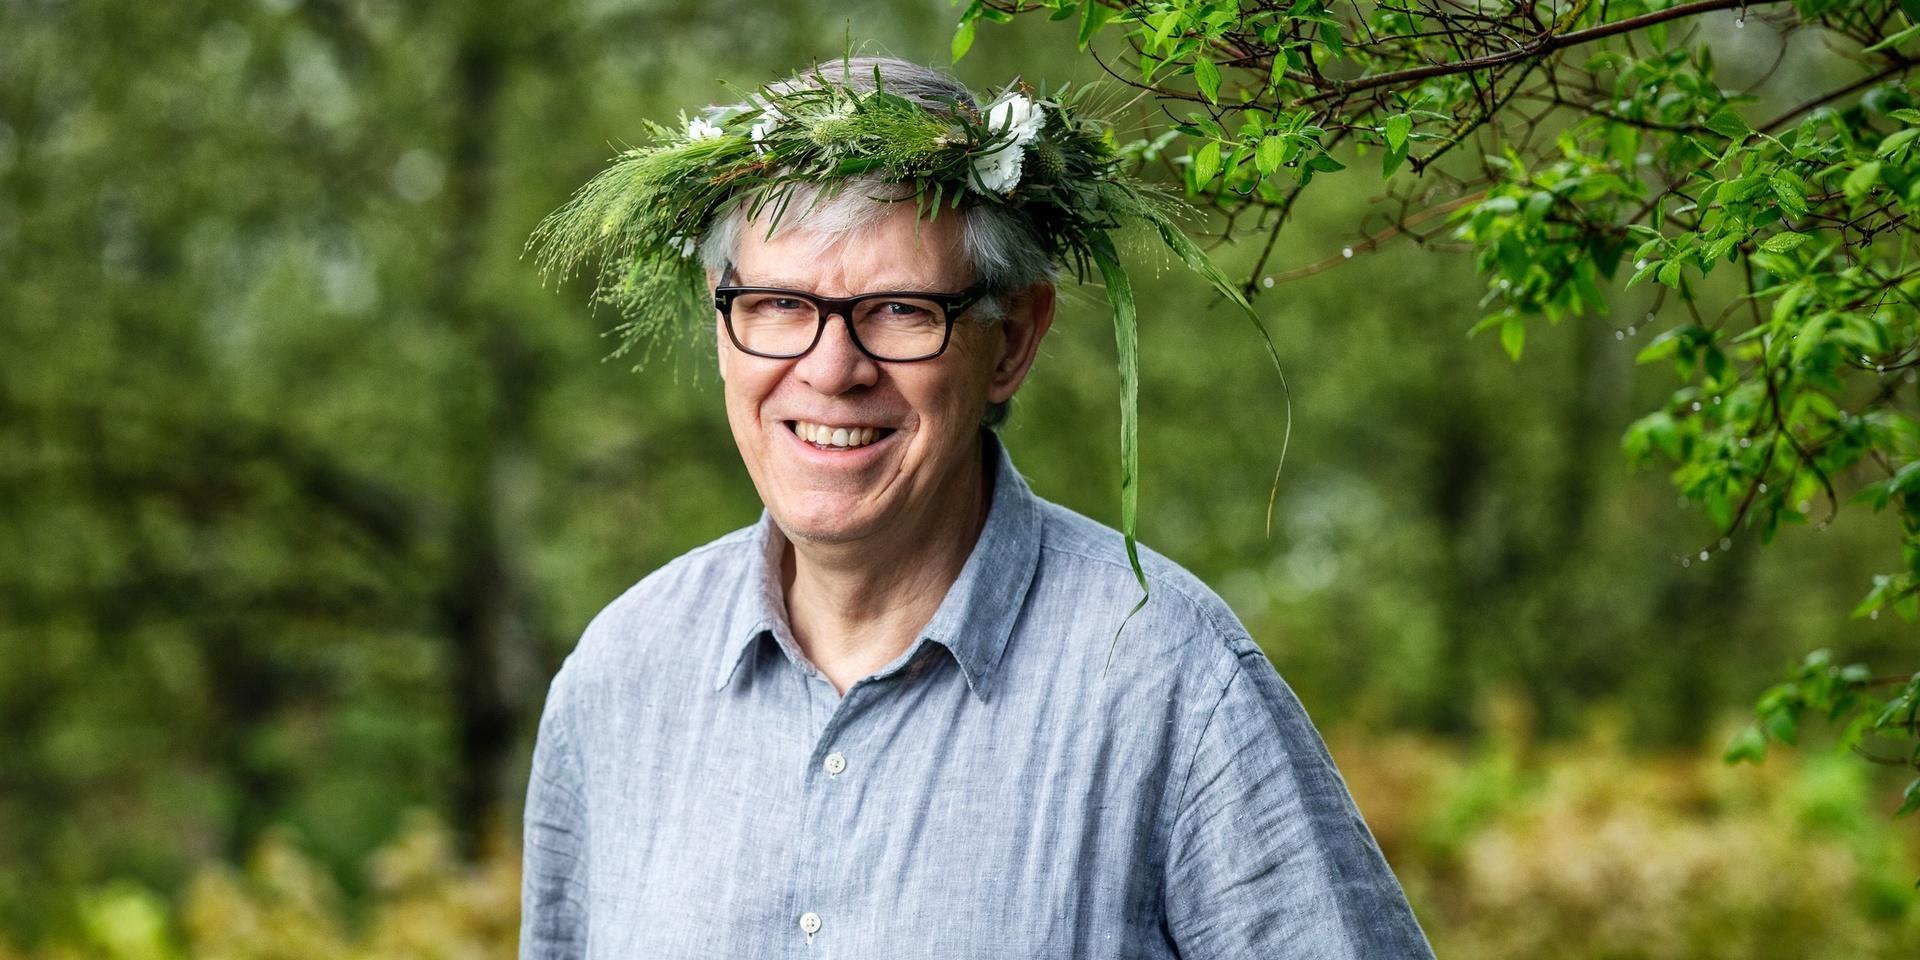 Biologen och naturjournalisten Henrik Ekman poserar inför Sommar i P1. Han har på sig den traditionsenliga kransen och en blå skjorta. Han bär glasögon och ler brett.